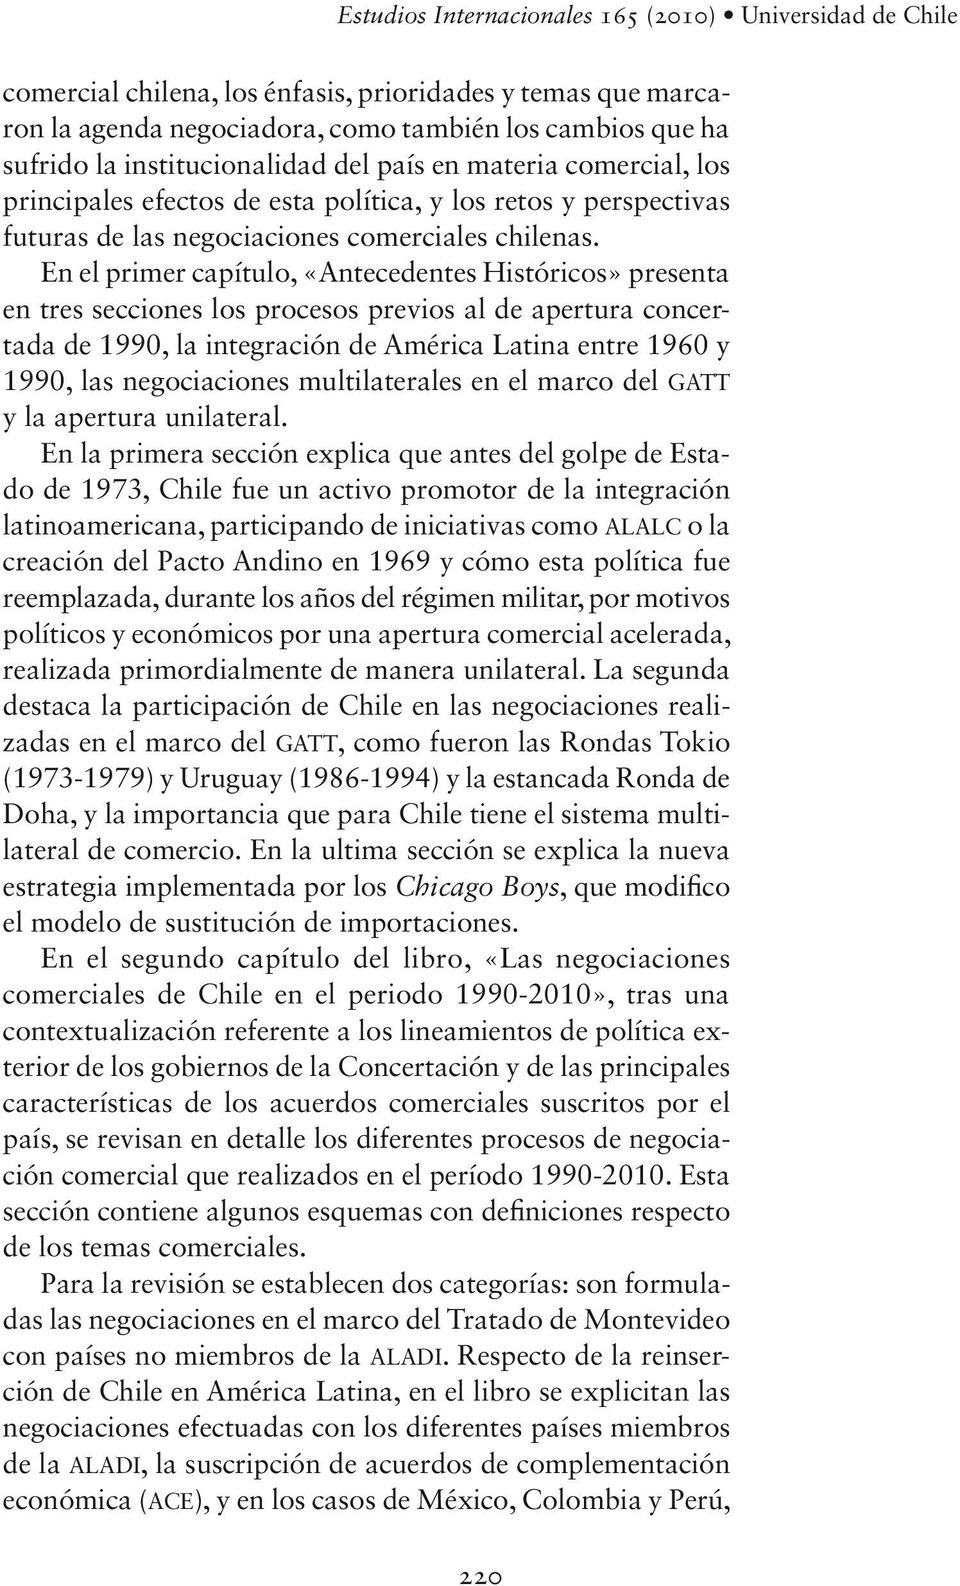 En el primer capítulo, «Antecedentes Históricos» presenta en tres secciones los procesos previos al de apertura concertada de 1990, la integración de América Latina entre 1960 y 1990, las